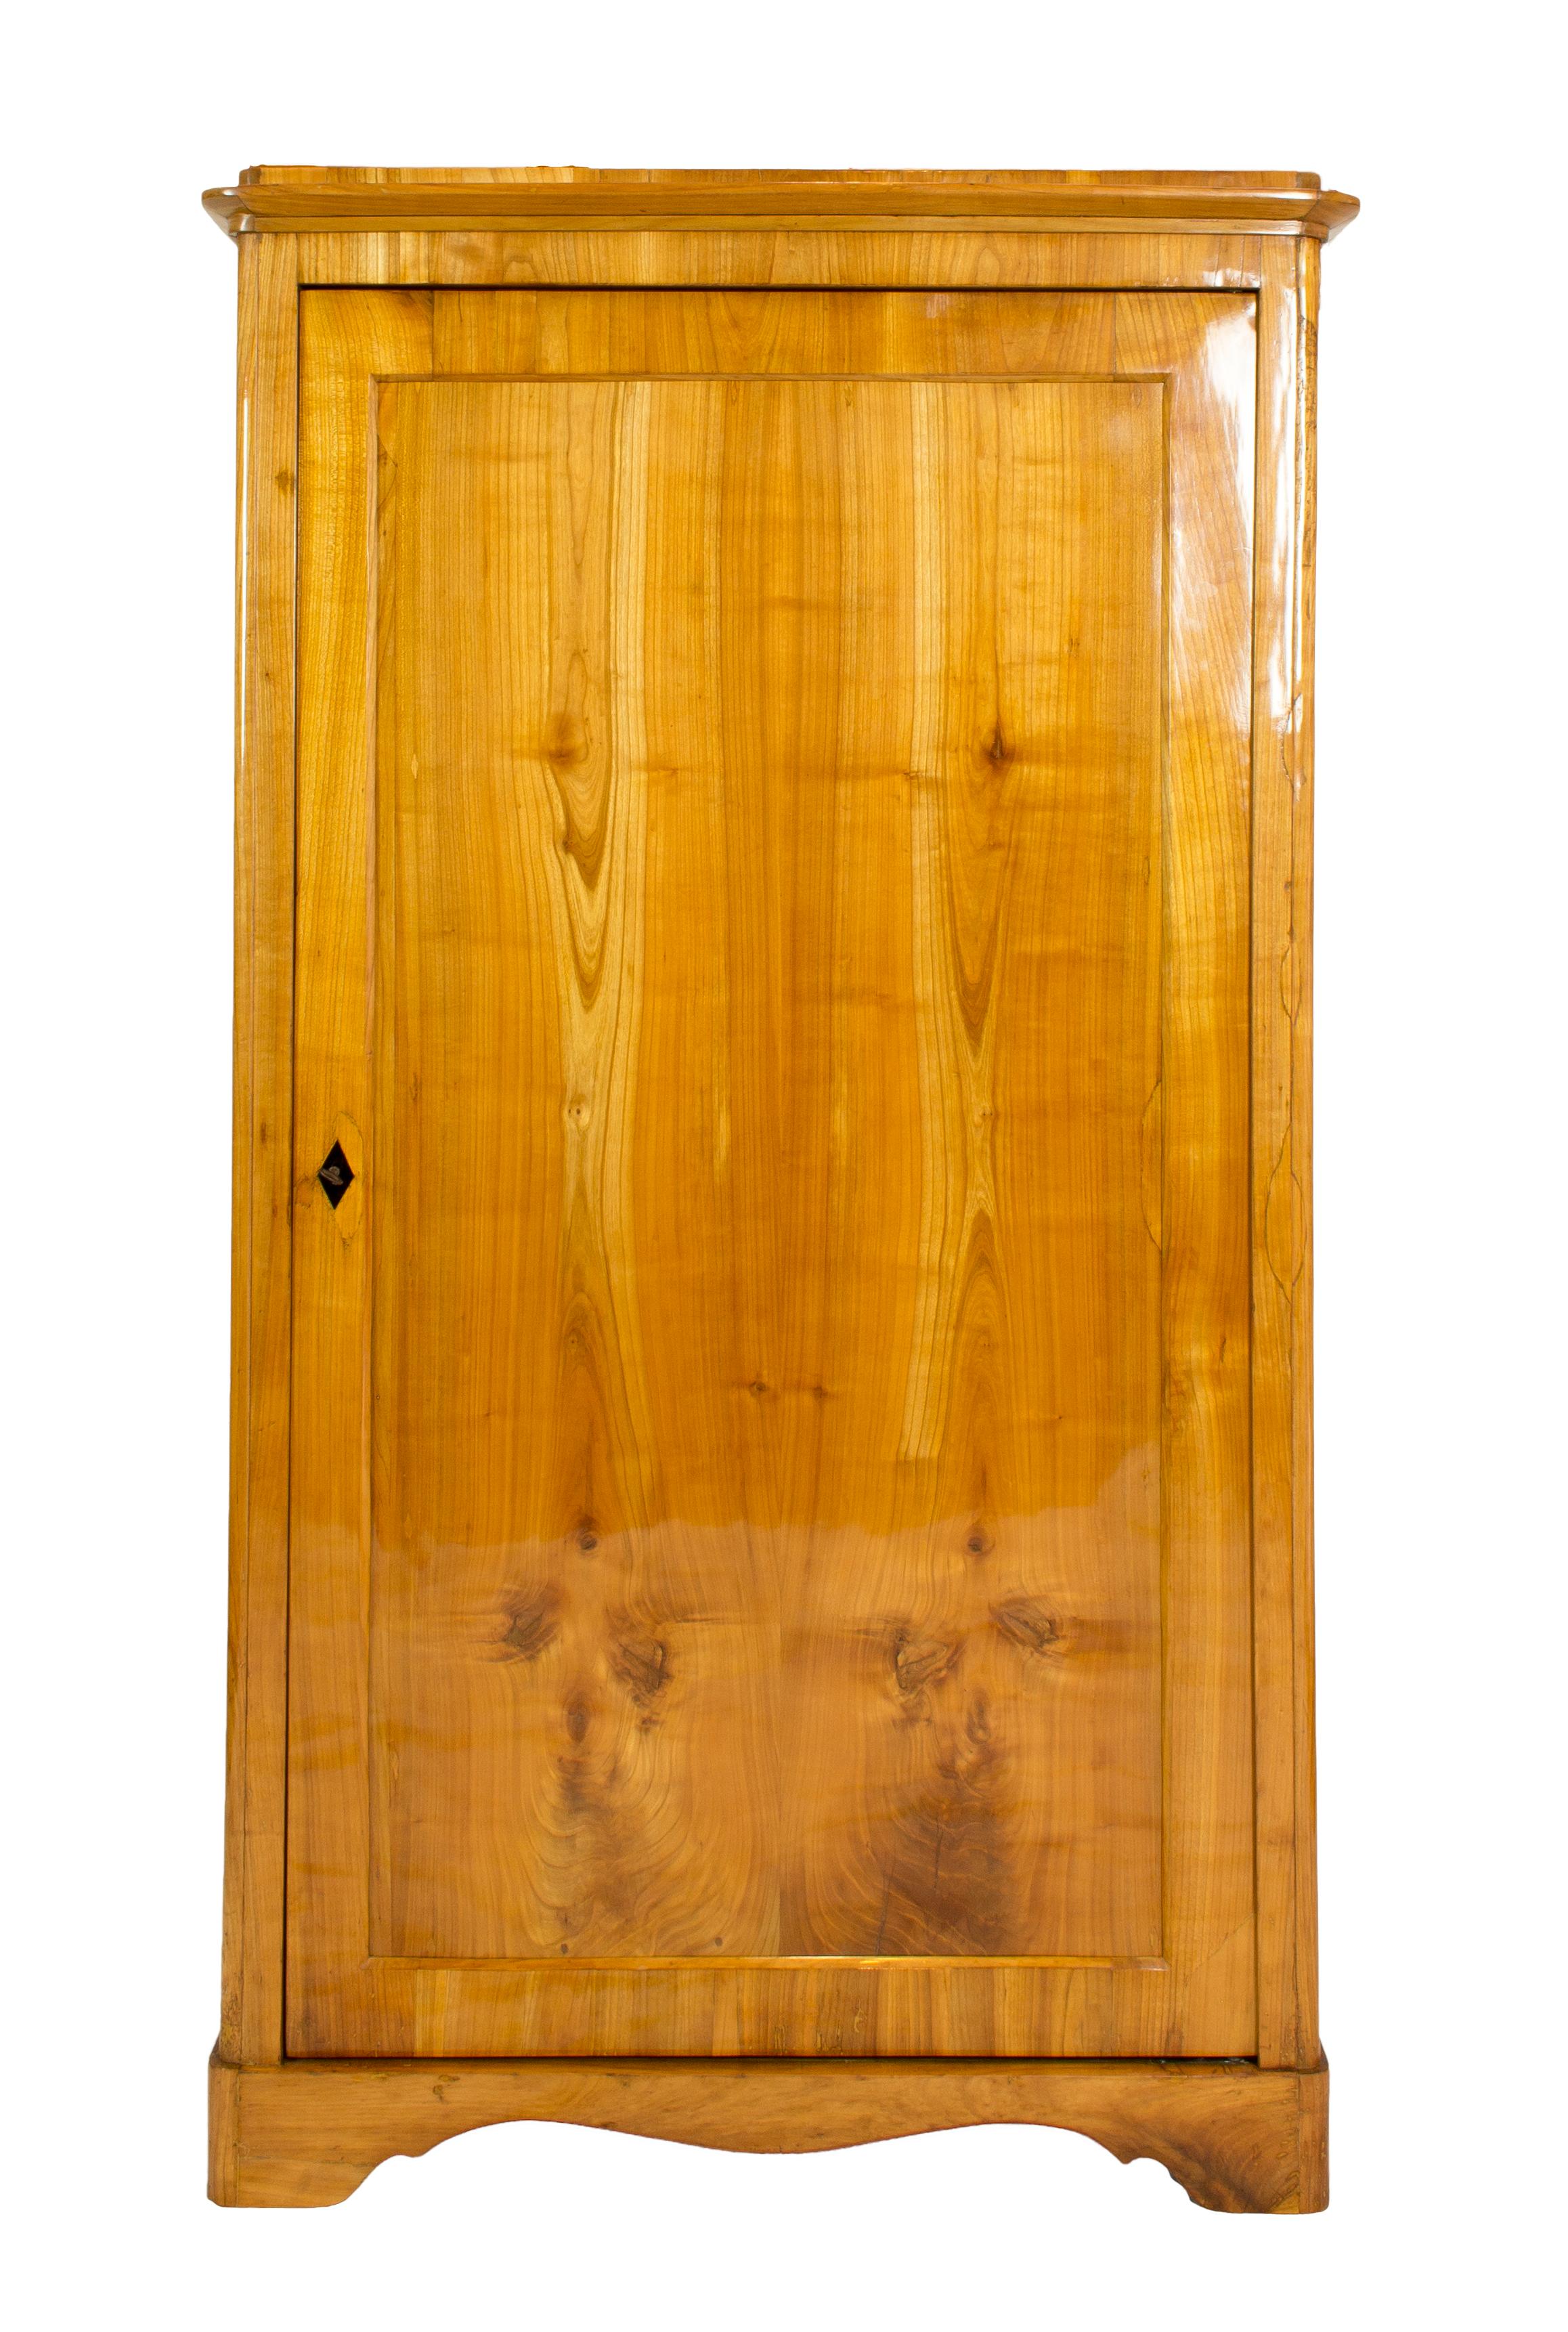 Très belle armoire aux lignes droites. Le meuble date de la période Biedermeier et a été fabriqué en bois de cerisier, en partie massif et en partie plaqué sur du bois d'épicéa vers 1830.
Dans un état restauré très bien poli à la main. L'armoire est